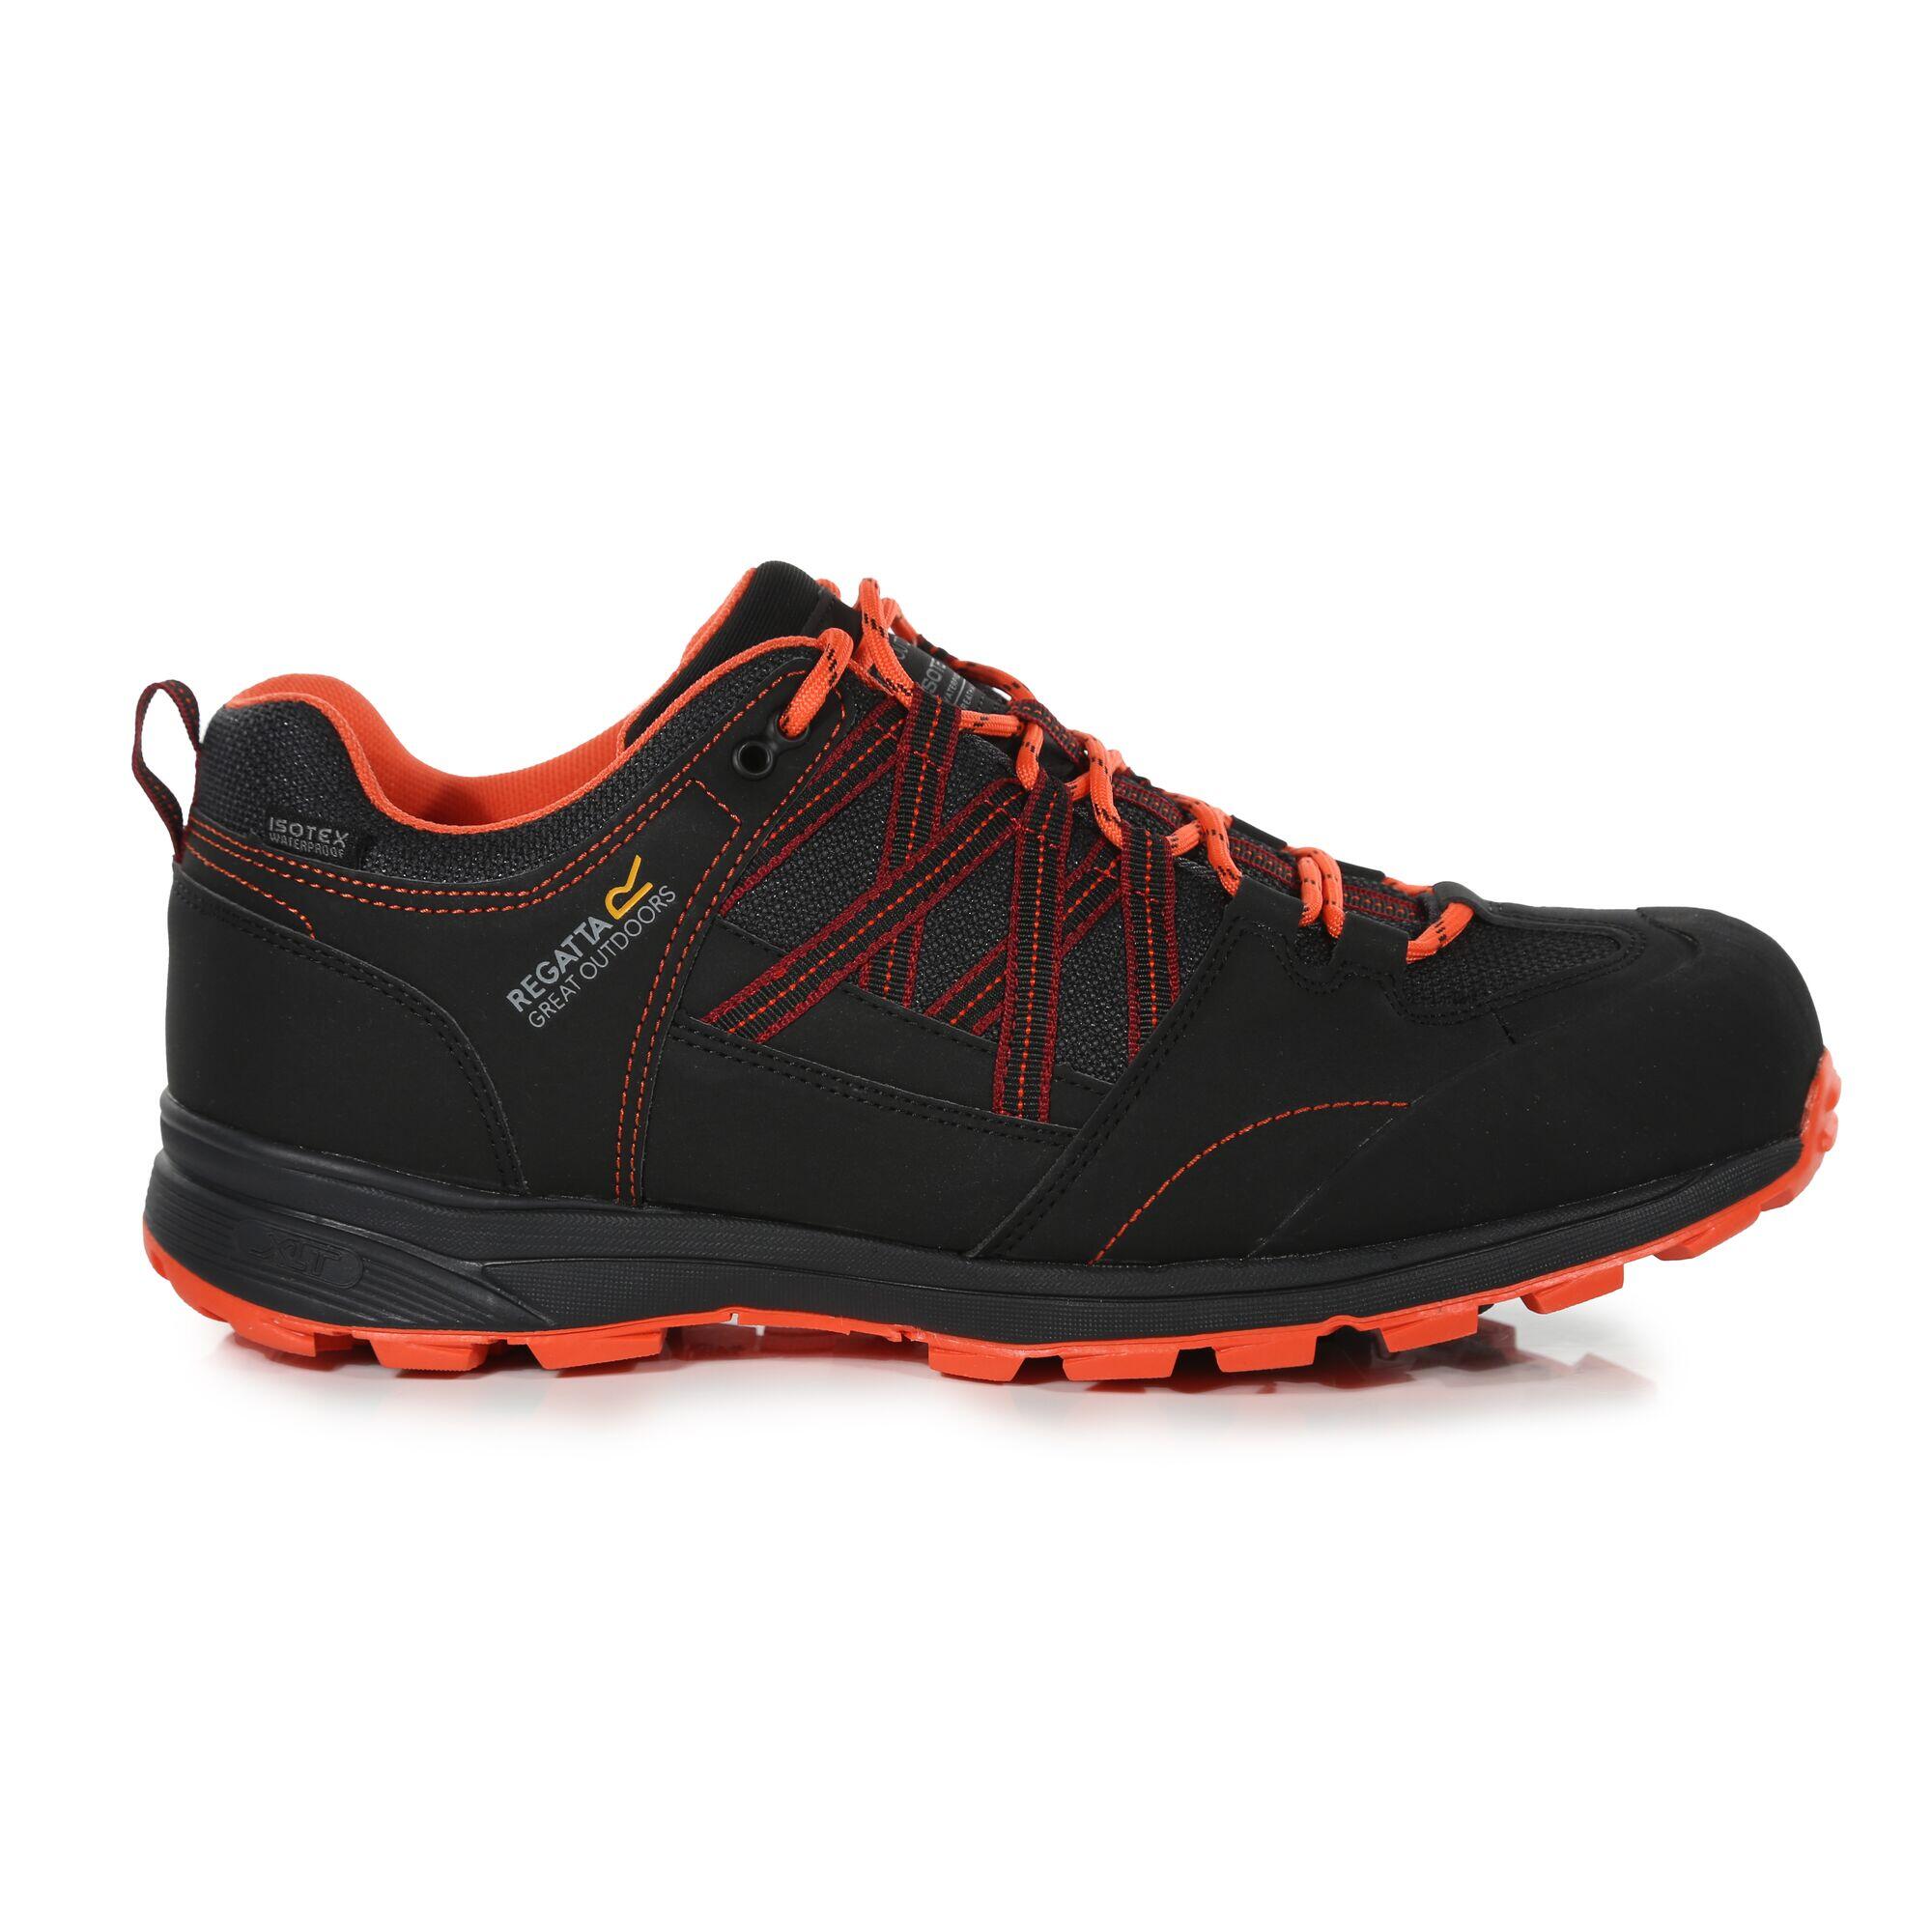 REGATTA Samaris II Men's Hiking Shoes - Black/Red